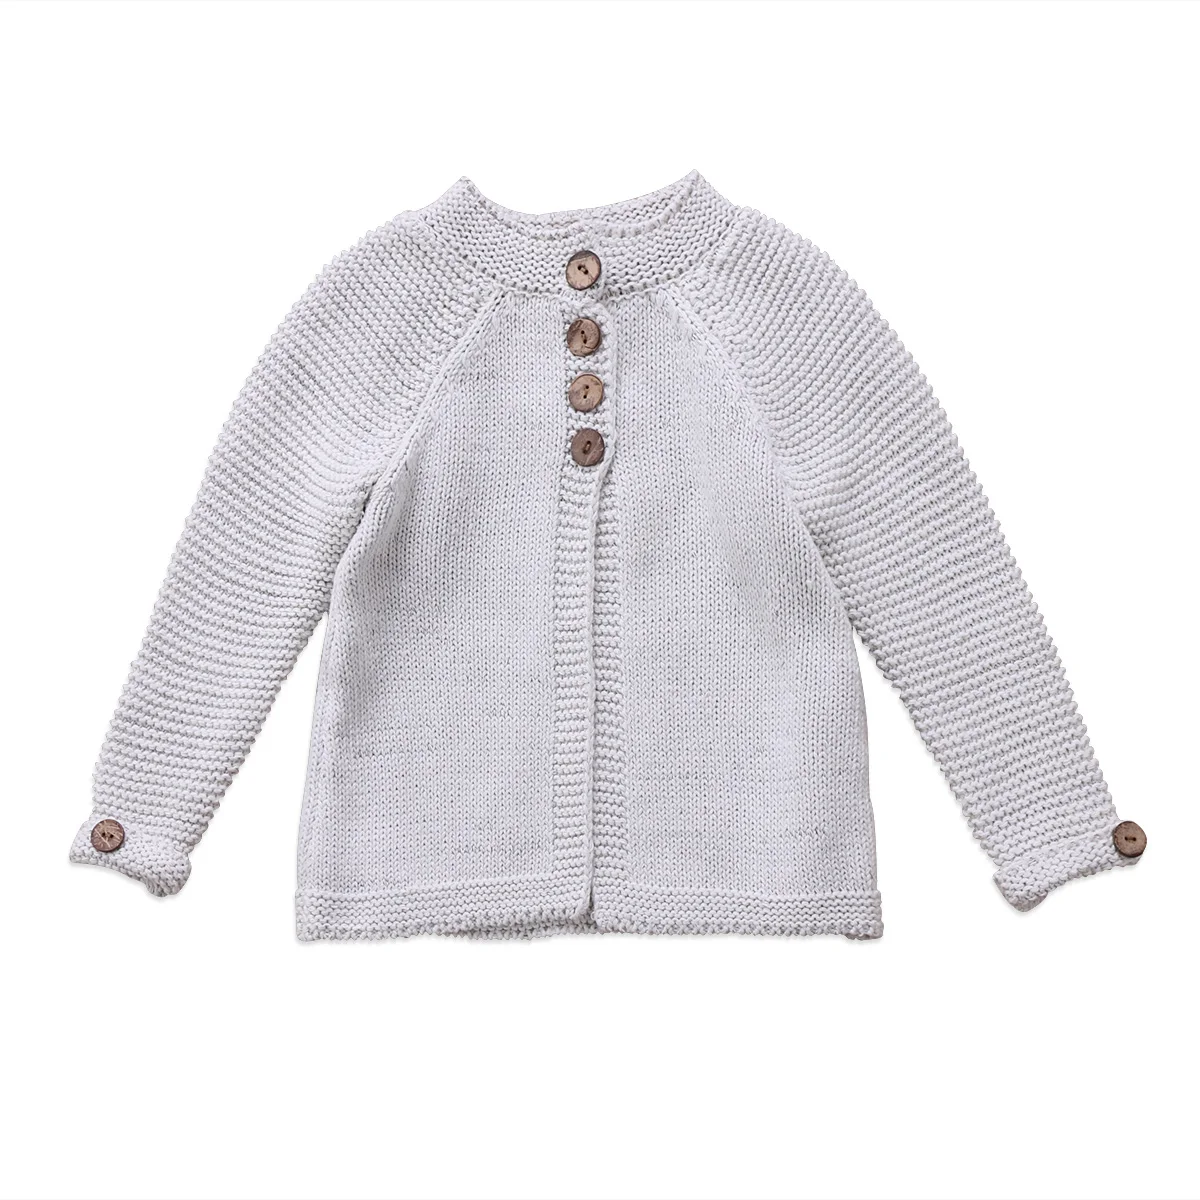 Новое поступление, зимние свитера, пальто, детский плащ для маленьких девочек, теплые свитера, Детская шерстяная вязаная одежда, От 1 до 8 лет - Цвет: Серый